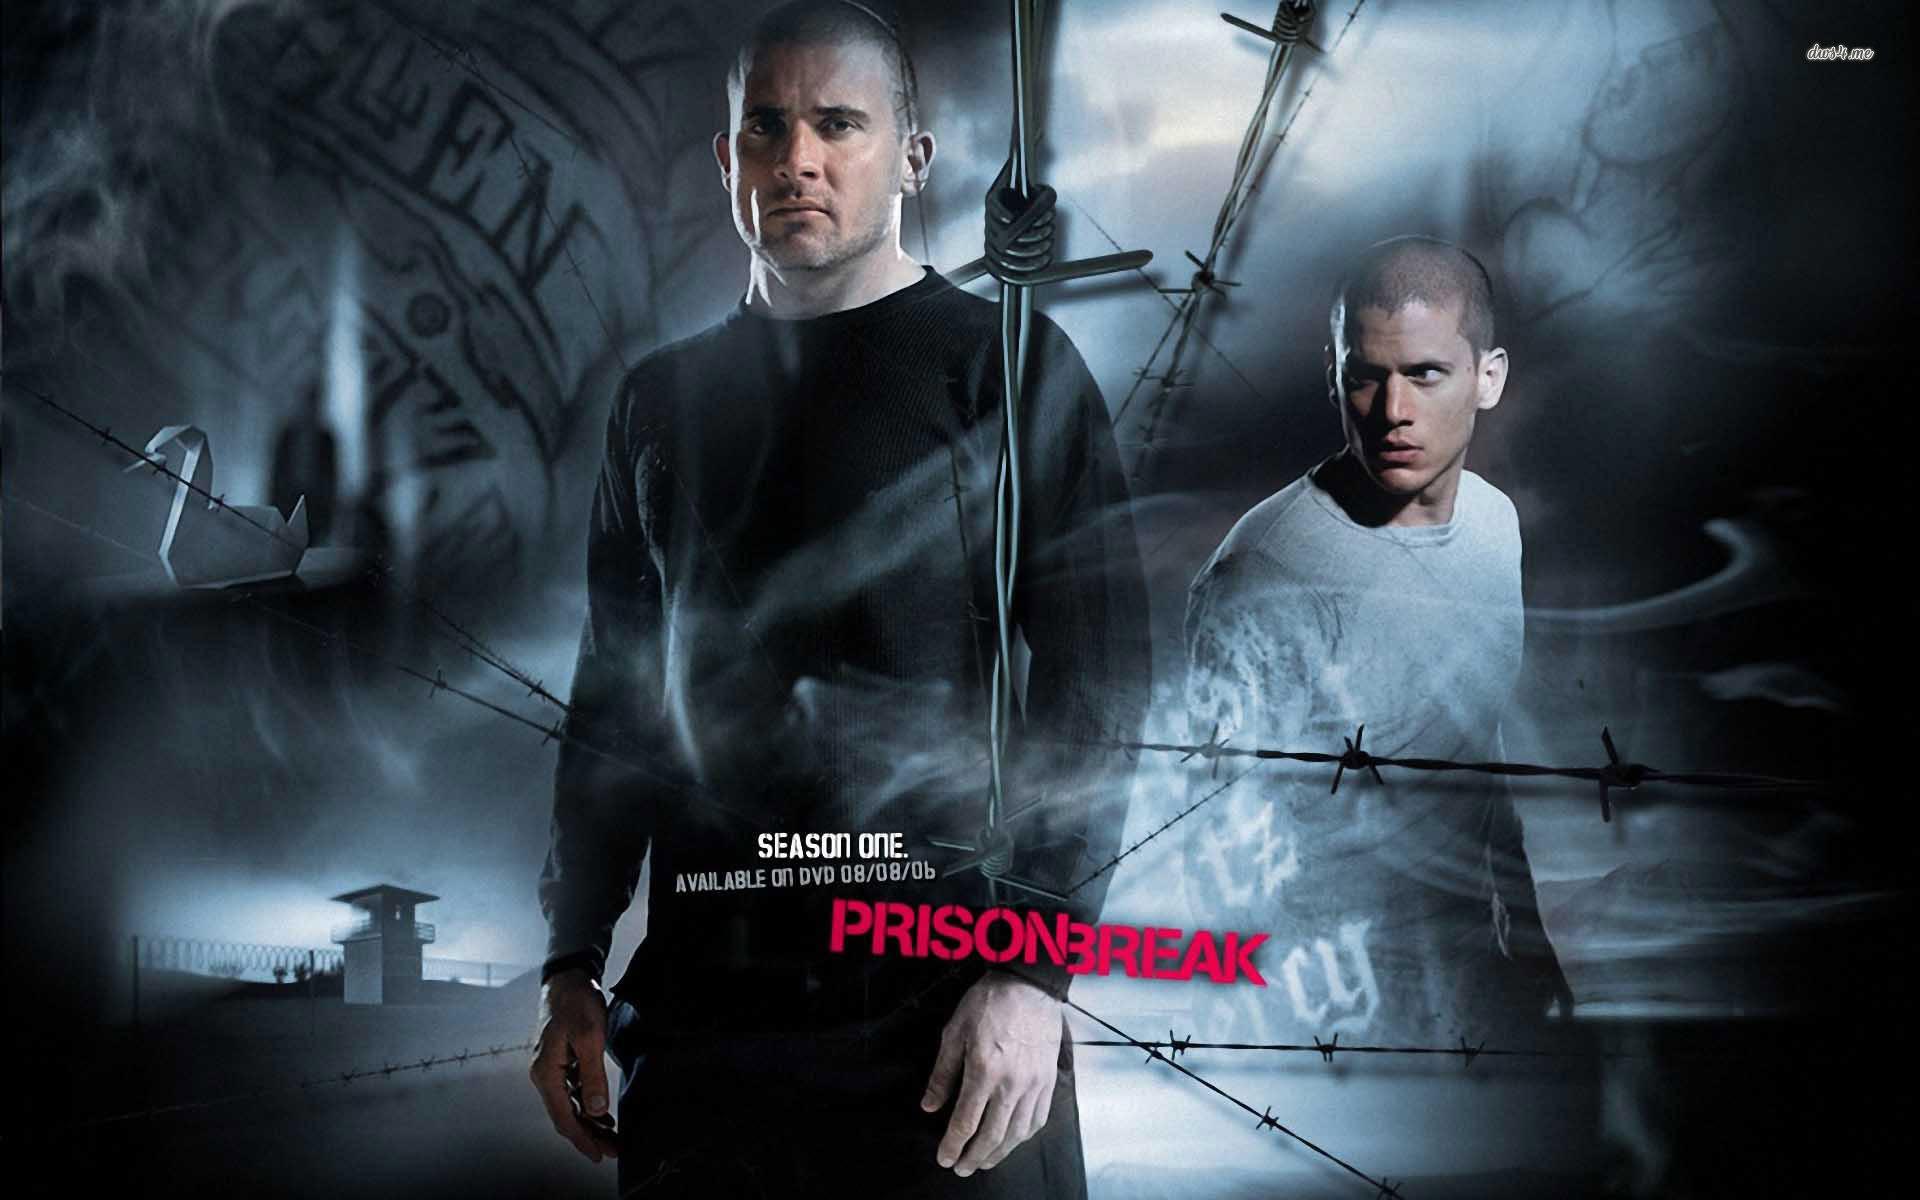 Prison Break wallpaper HD for desktop background